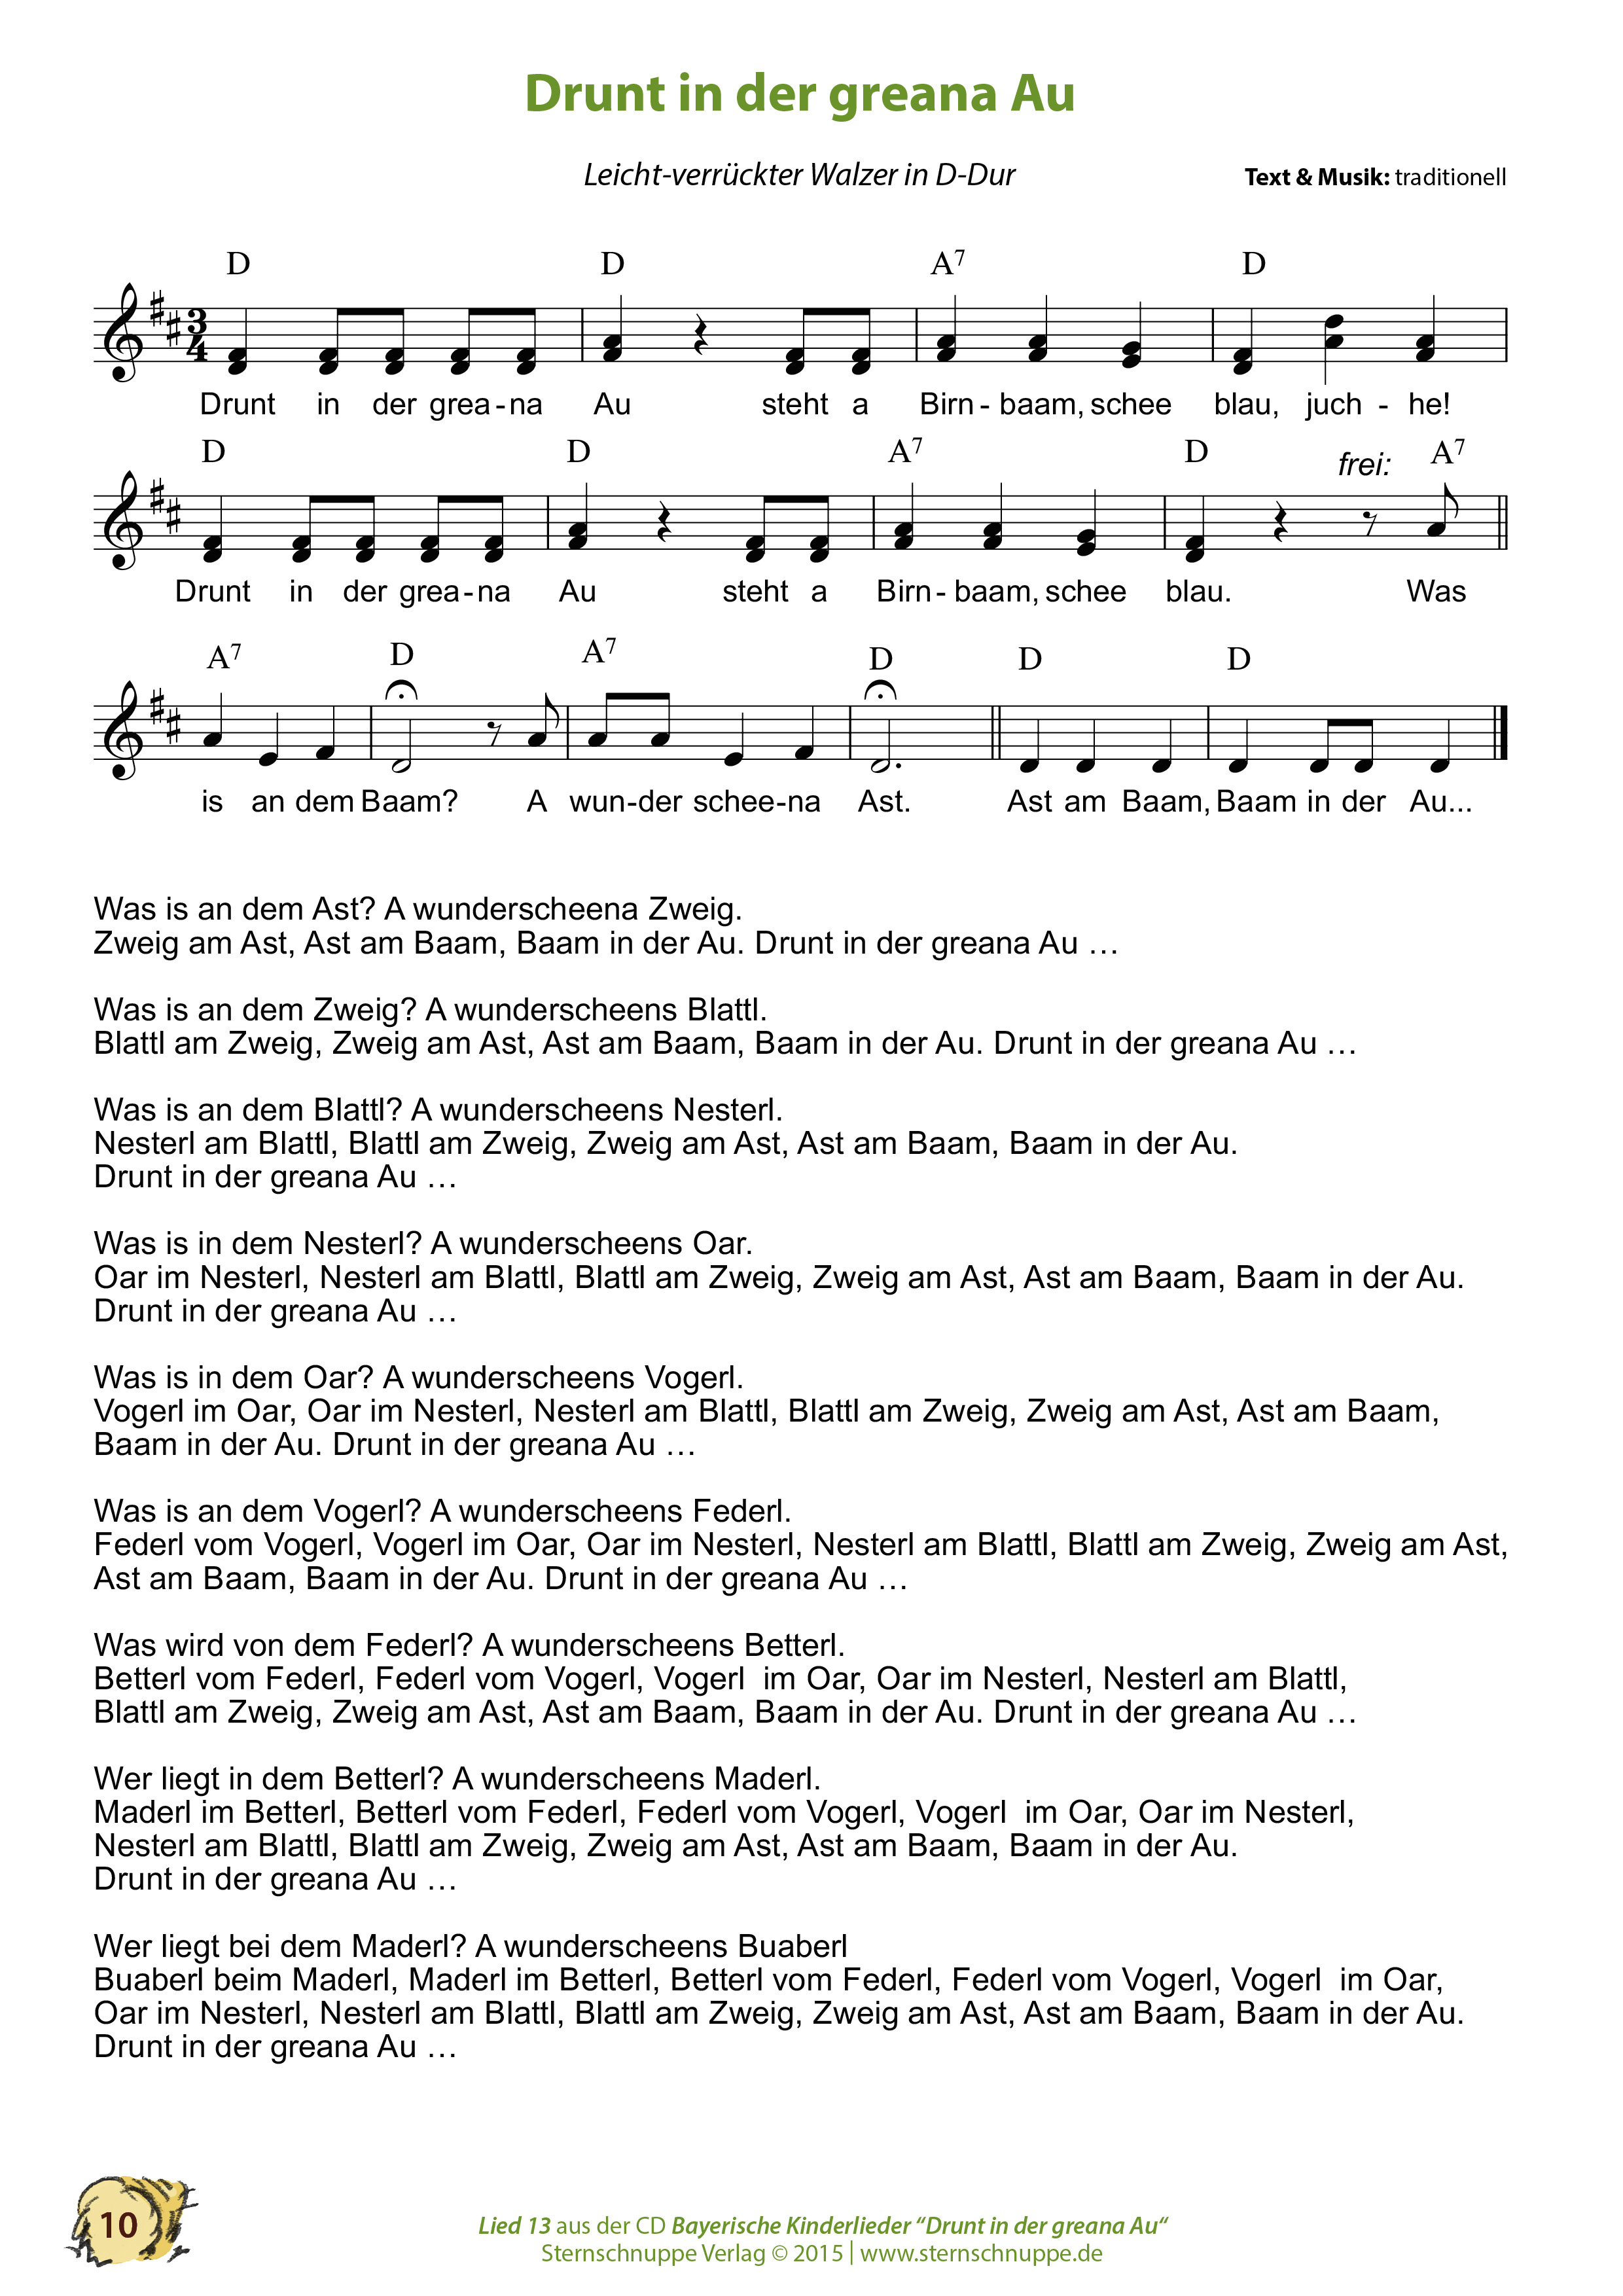 Liedtext, Akkorde und Noten vom Kinderlied Drunt in der greana Au